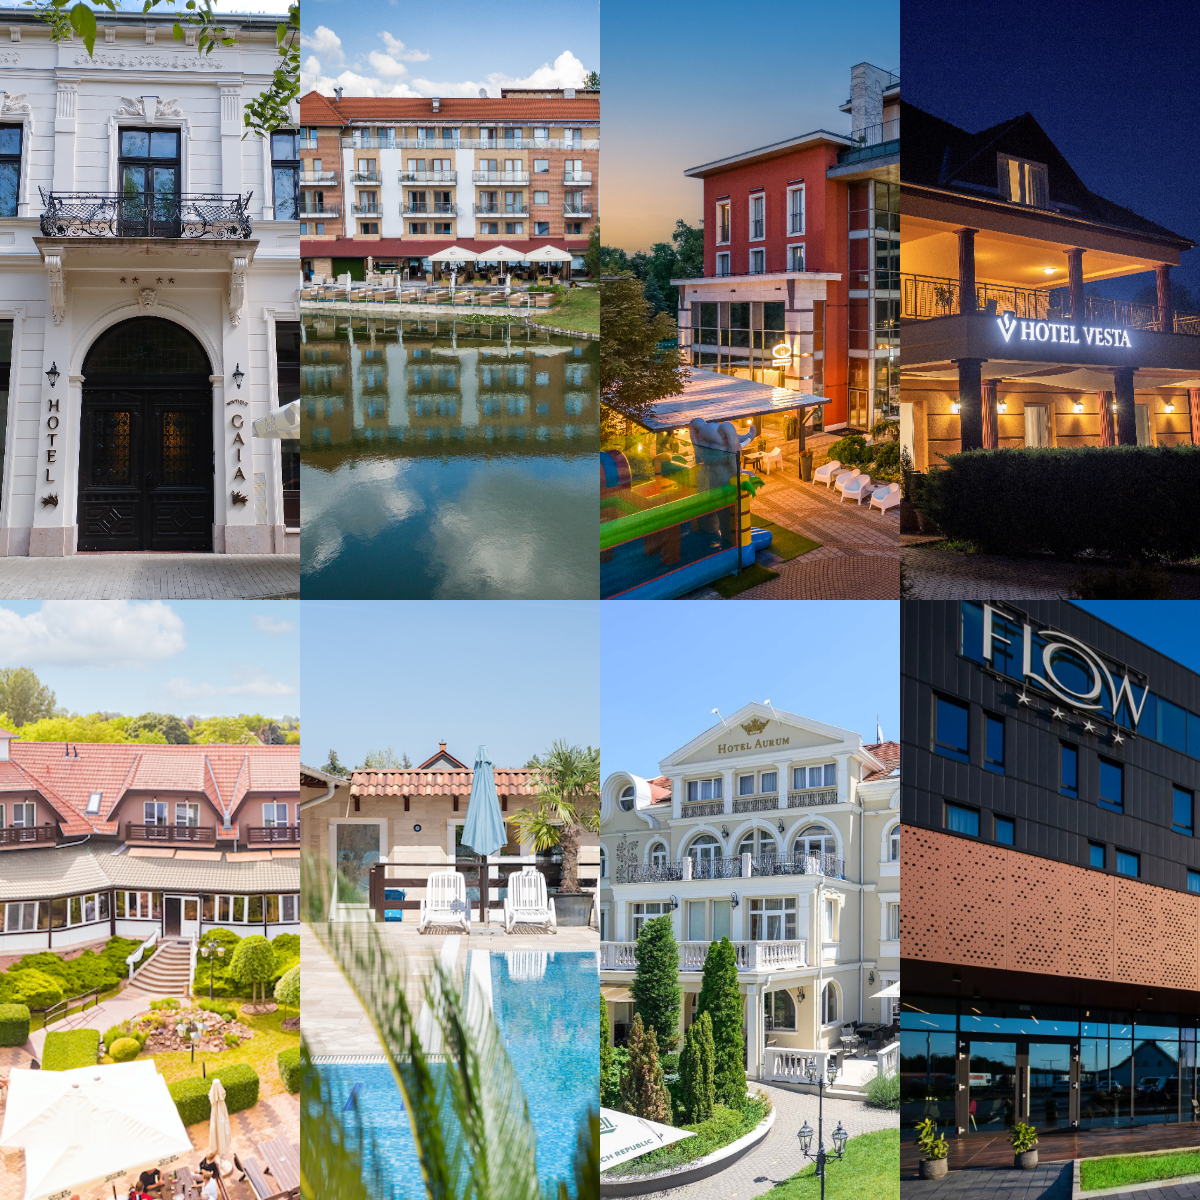 Szerinted melyik a legjobb szálloda az alföldi régióban?